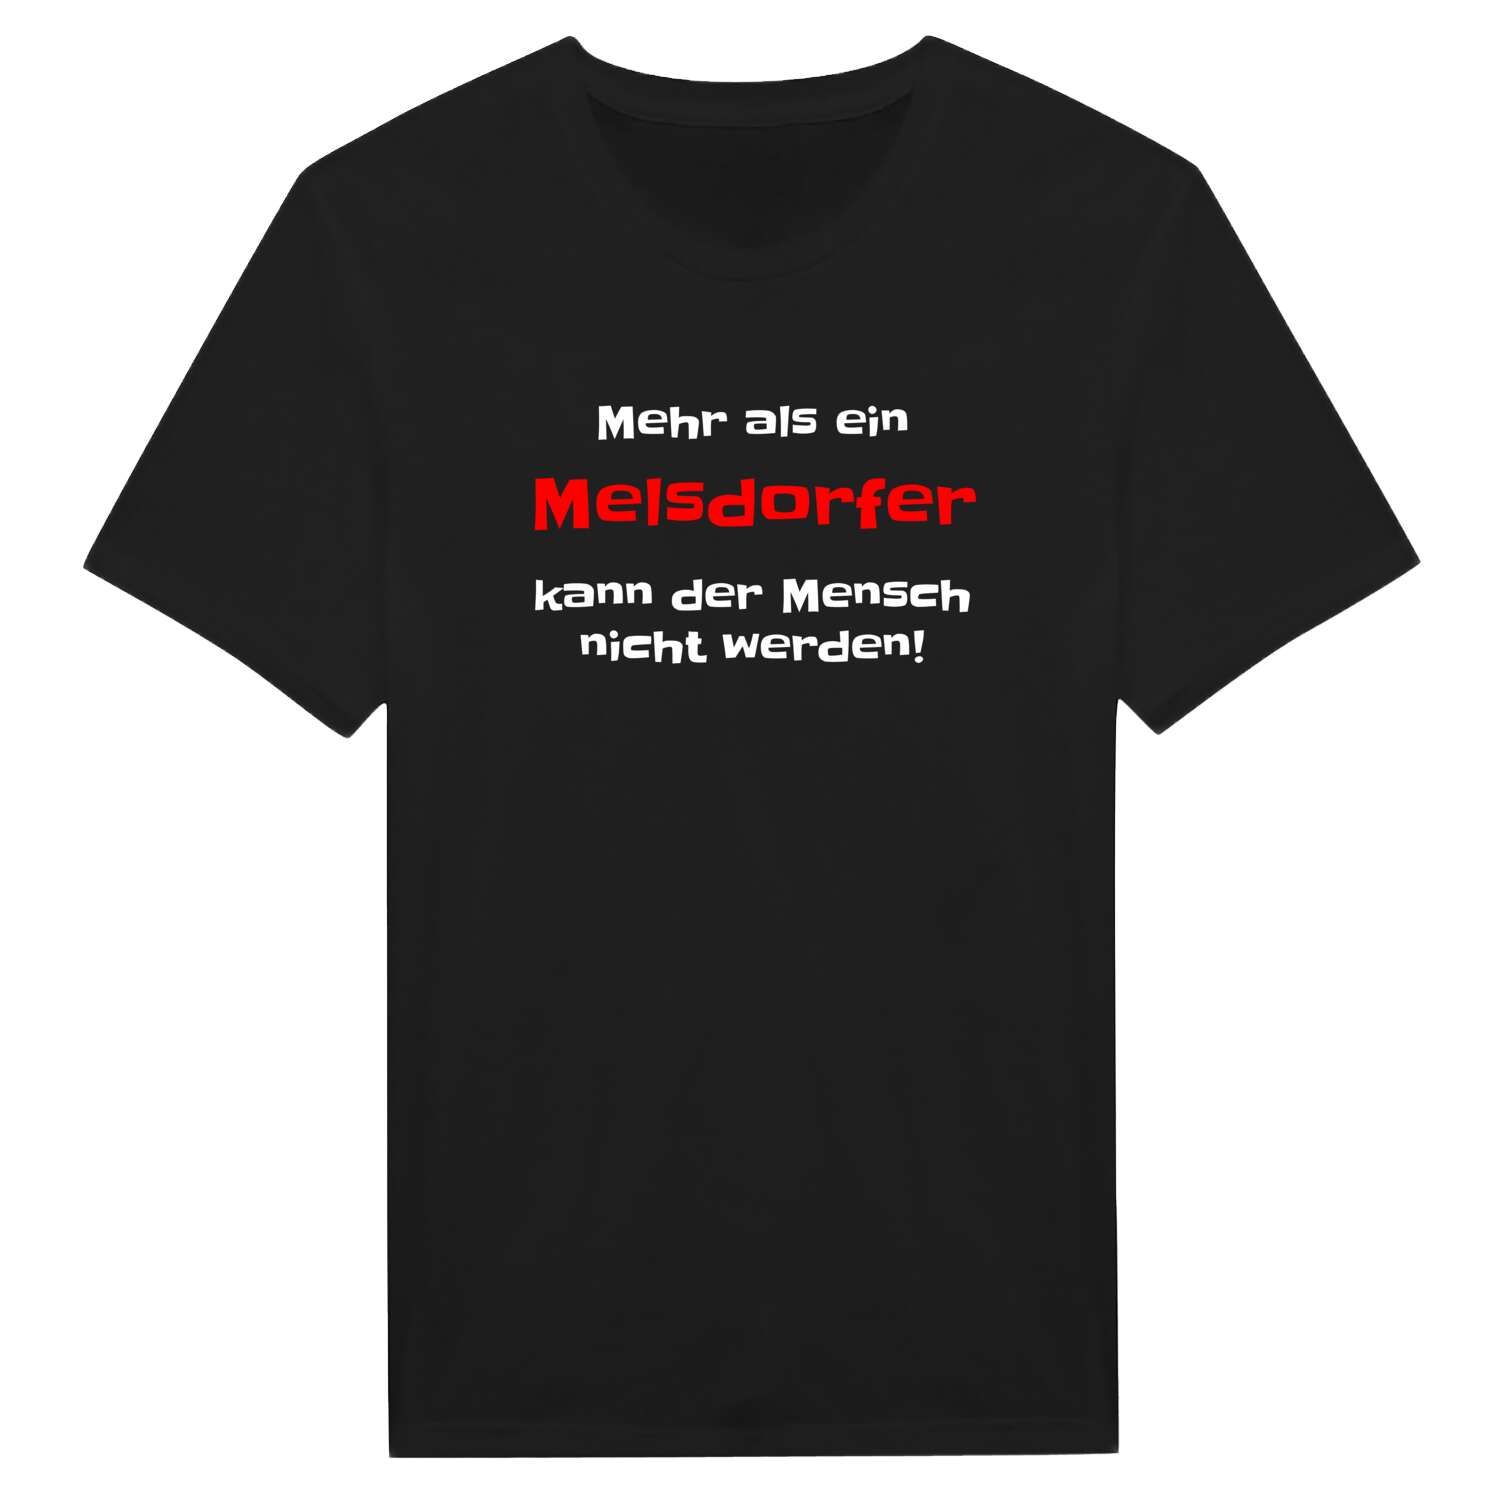 Melsdorf T-Shirt »Mehr als ein«